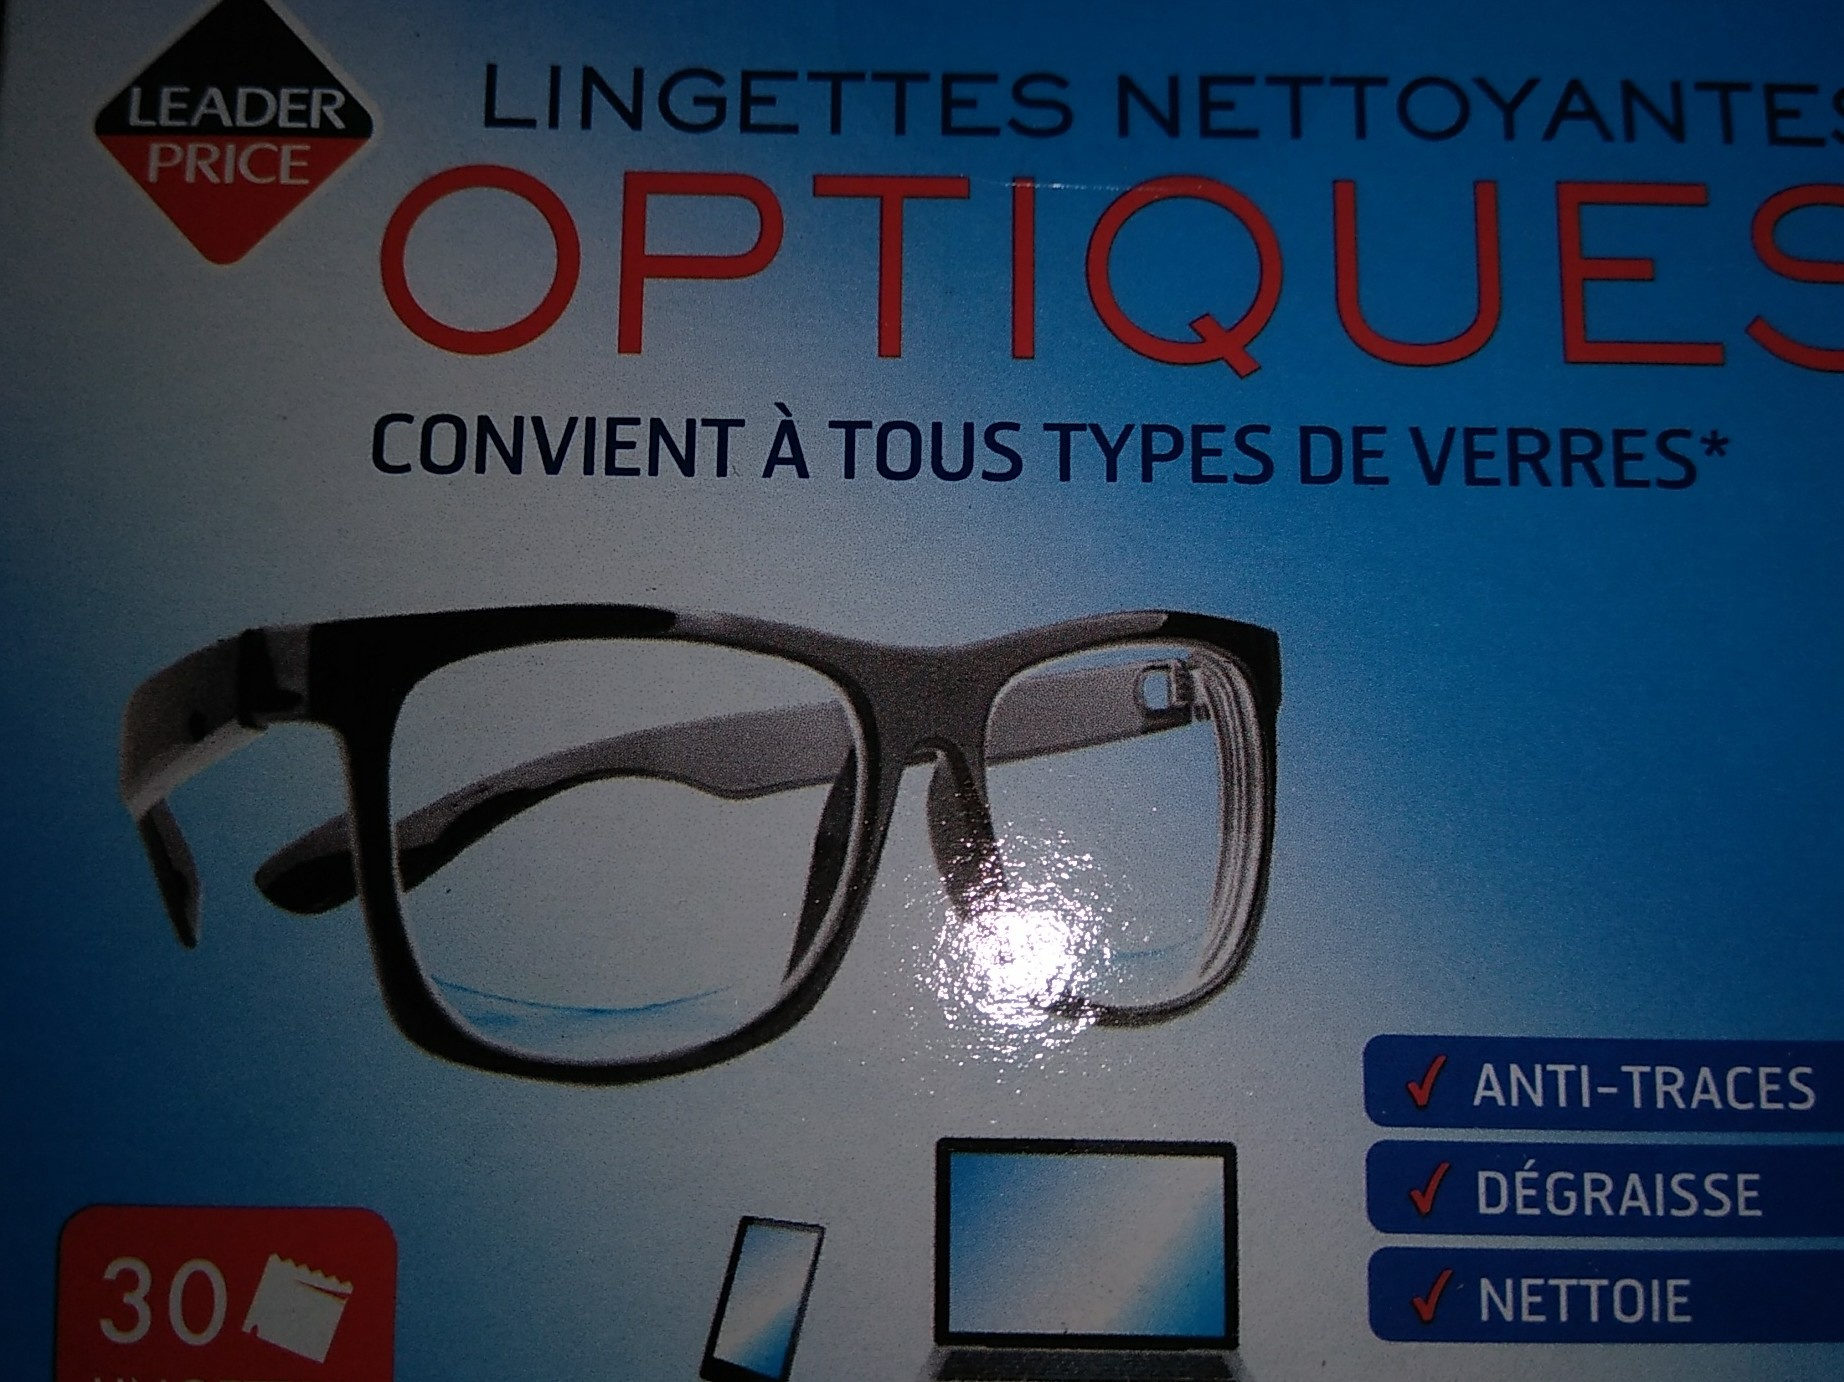 lingettes nettoyantes optiques - Product - fr